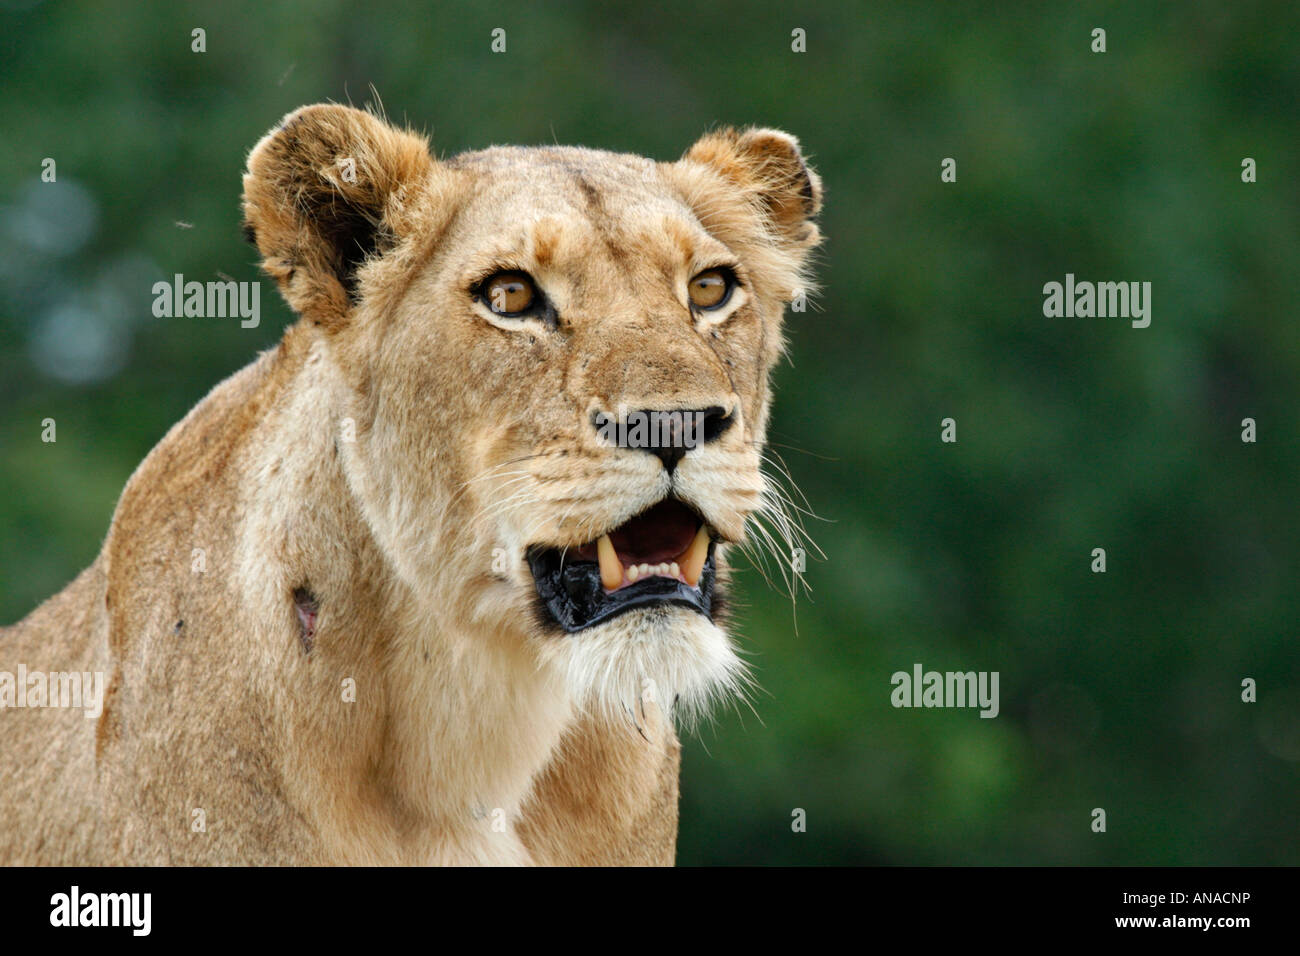 Retrato de un león con la boca abierta mostrando los dientes afilados Foto de stock